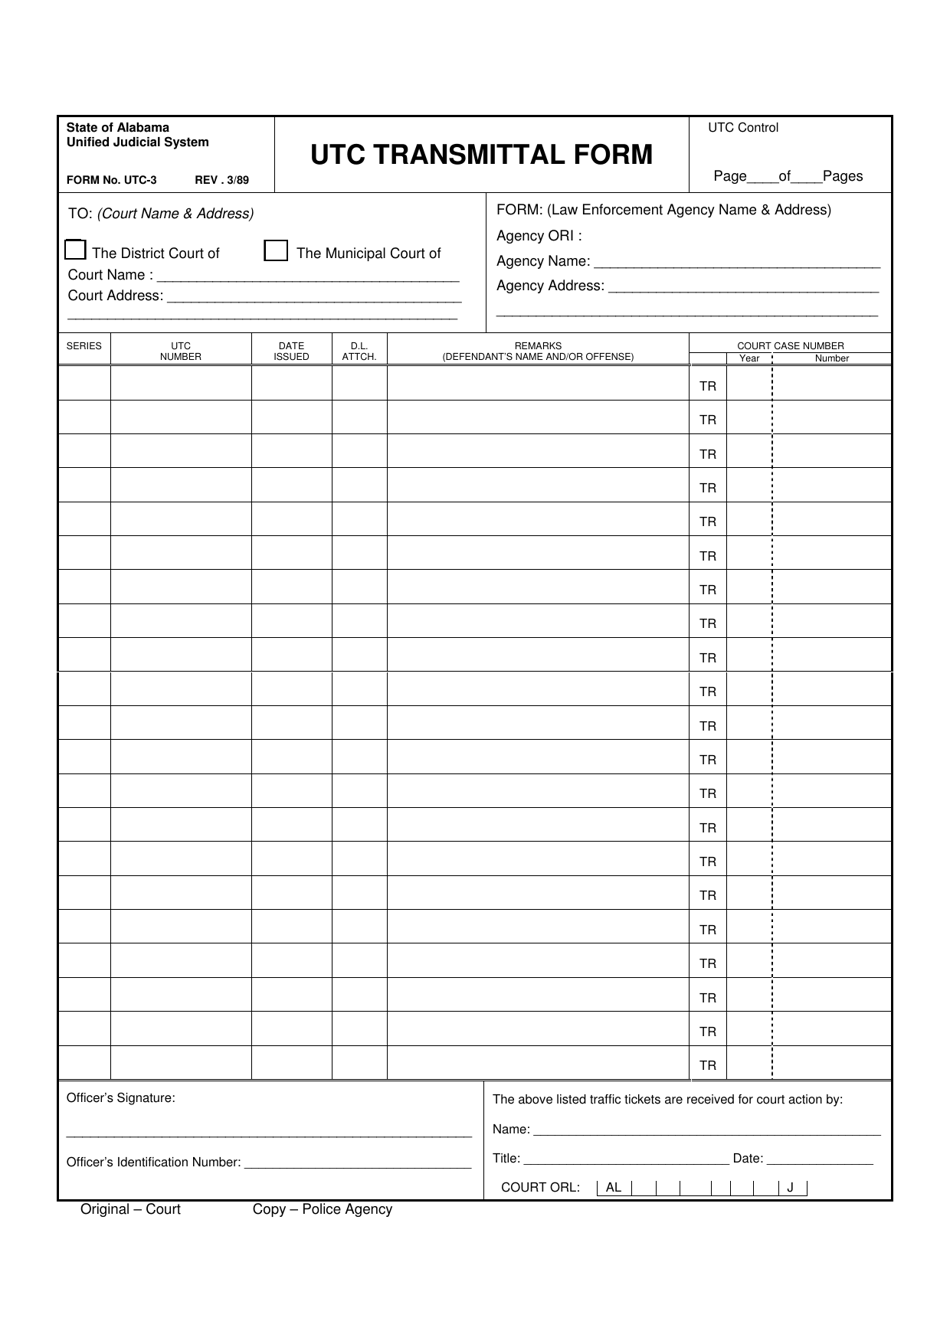 Form UTC-03 Utc Transmittal Form - Alabama, Page 1